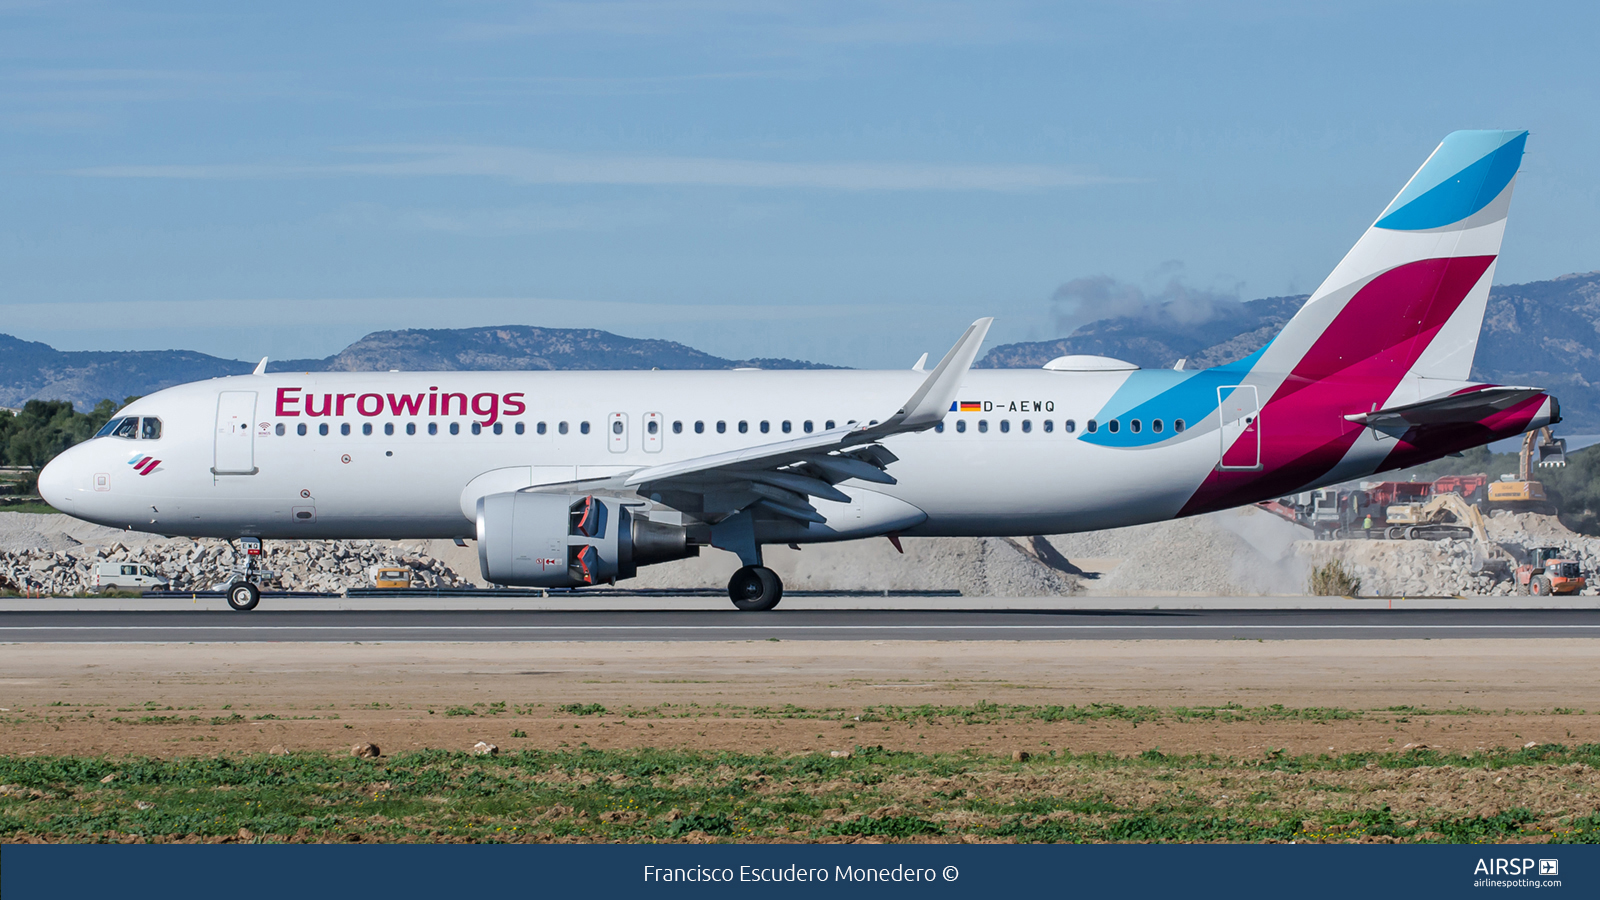 Eurowings  Airbus A320  D-AEWQ